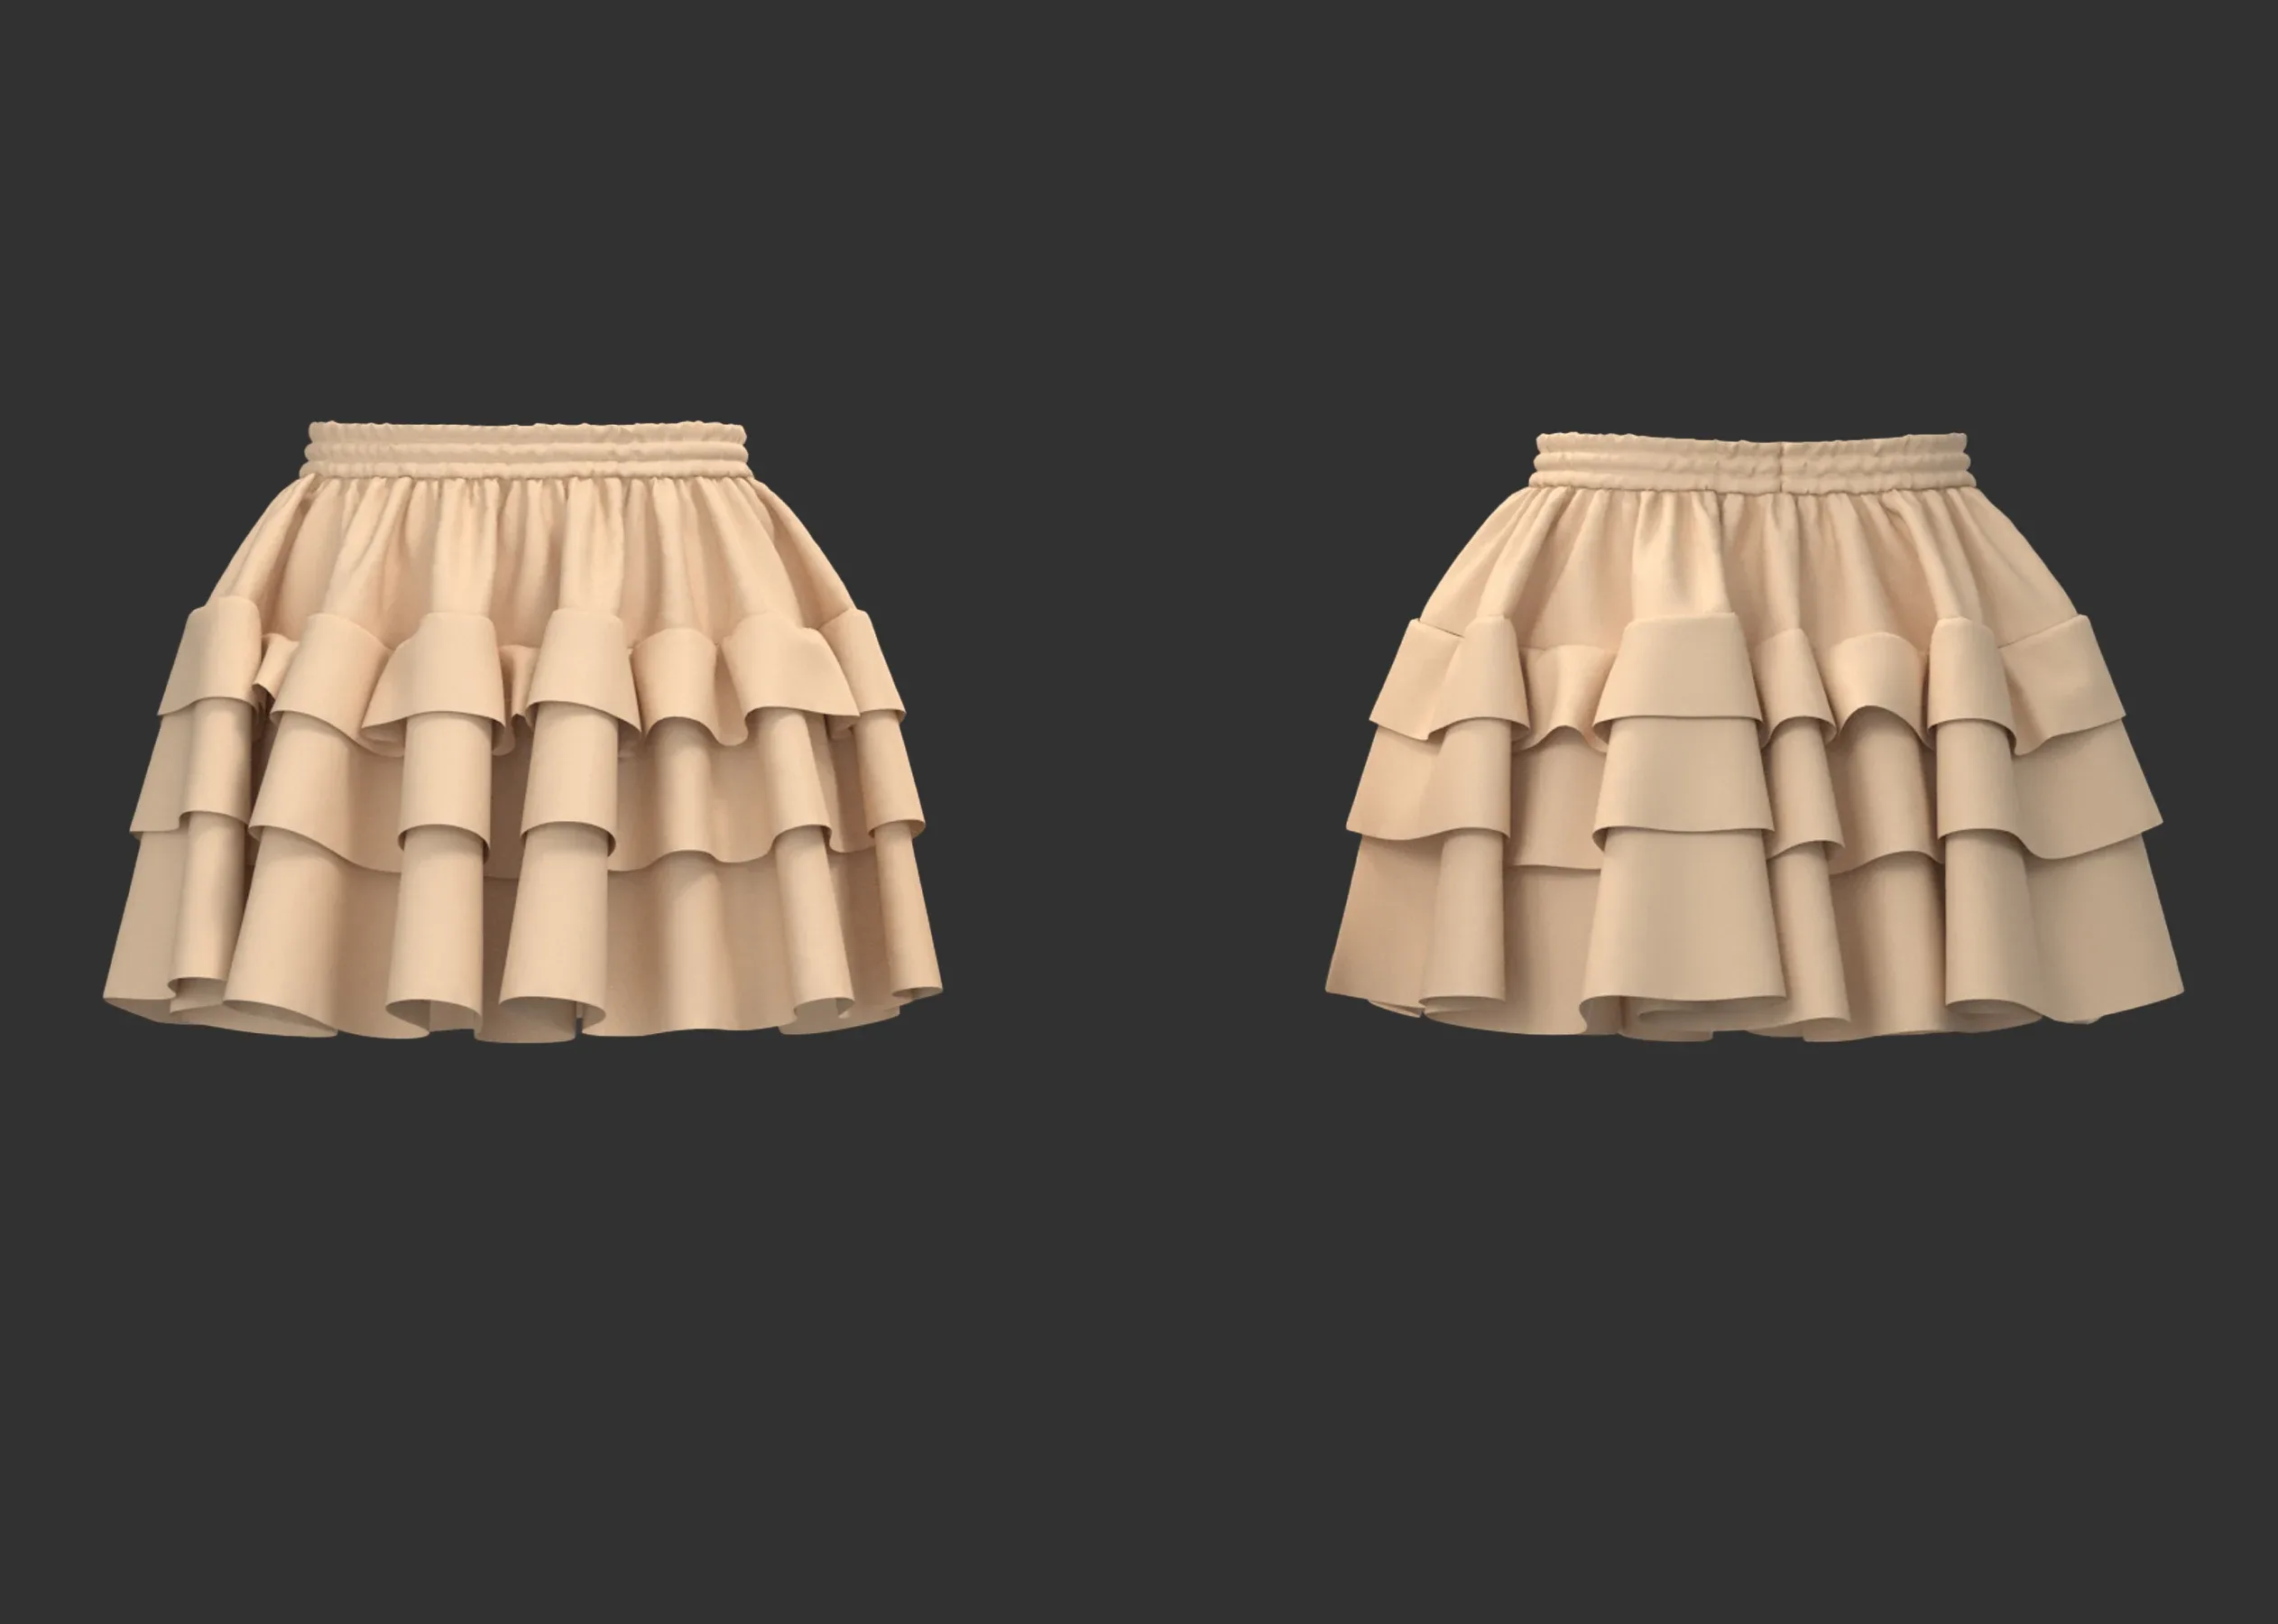 14 Women's Skirt + Zprj +Fbx +Obj